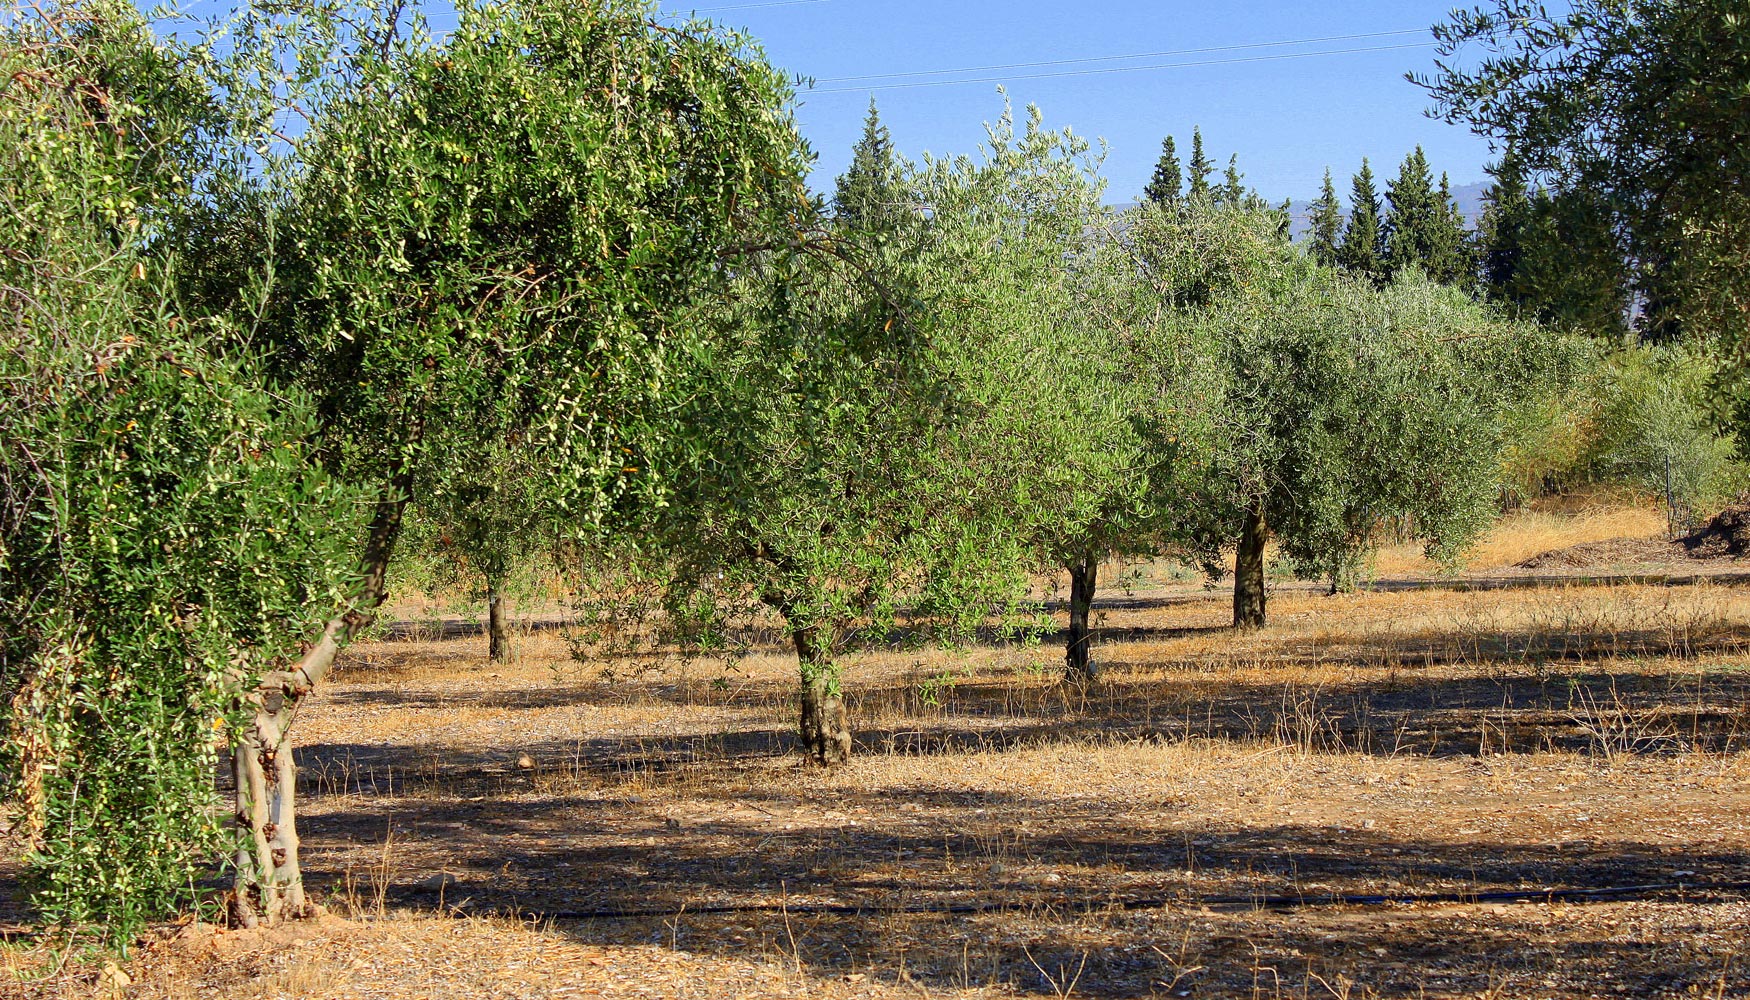 Plantacin en seto. Los olivos de tronco fino y copa a lo alto permiten la plantacin en seto. Foto: Fundacin Descubre...